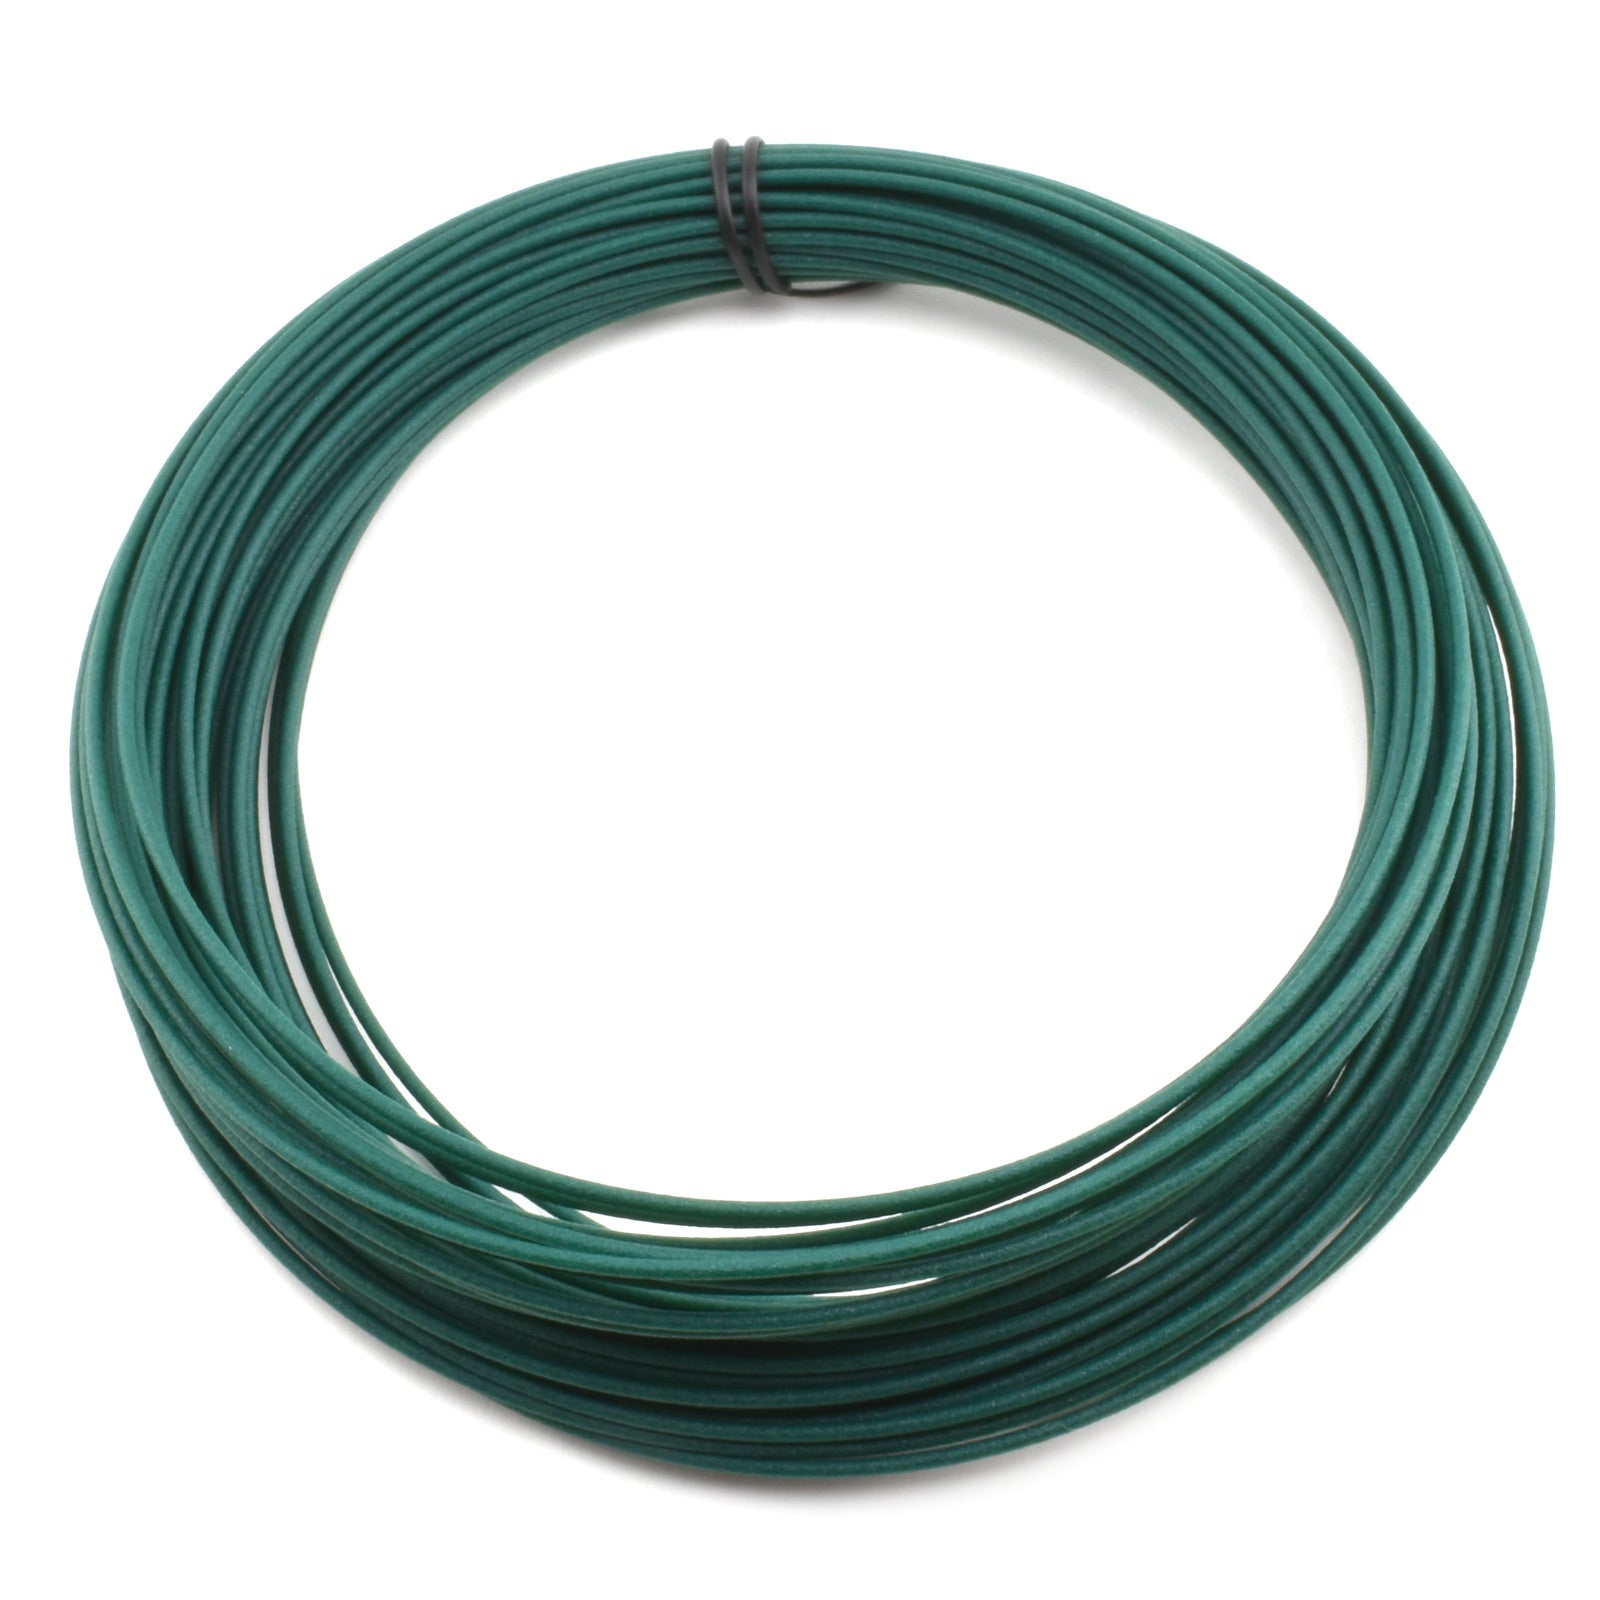 50g Coil Matte Fiber HTPLA - Green Filament, 1.75mm - Micro - Mark Filament